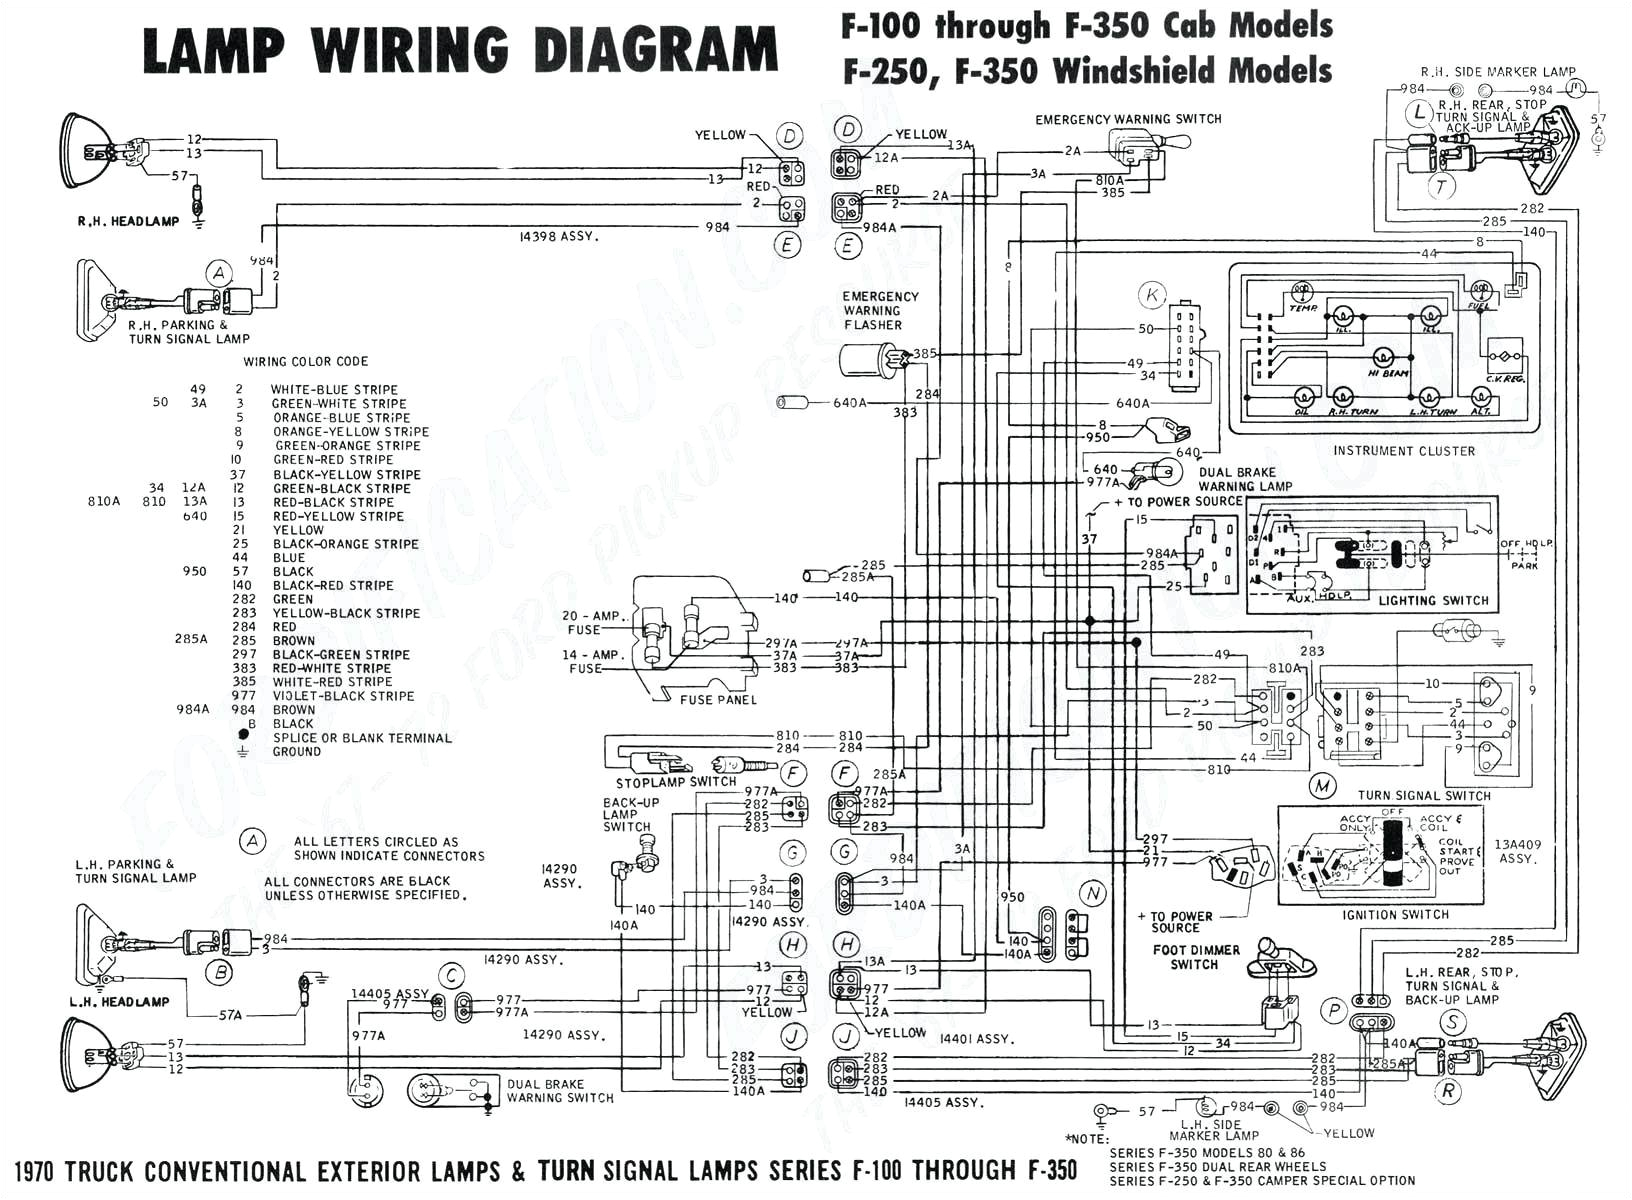 2007 ram 1500 wiring diagram wiring diagram toolbox wiring diagram dodge ram 1500 2007 tail lights